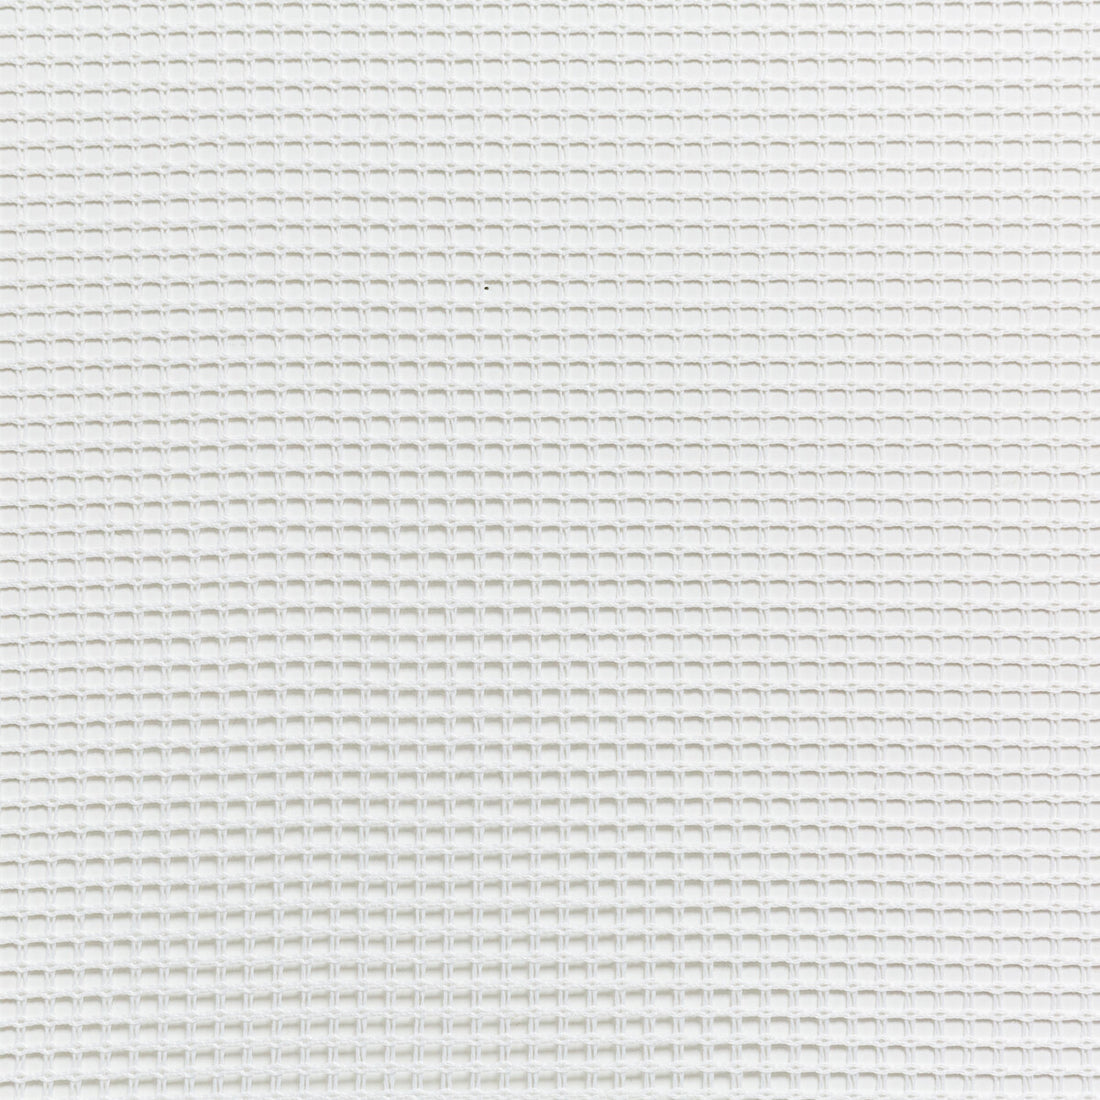 Kravet Basics fabric in 4713-101 color - pattern 4713.101.0 - by Kravet Basics